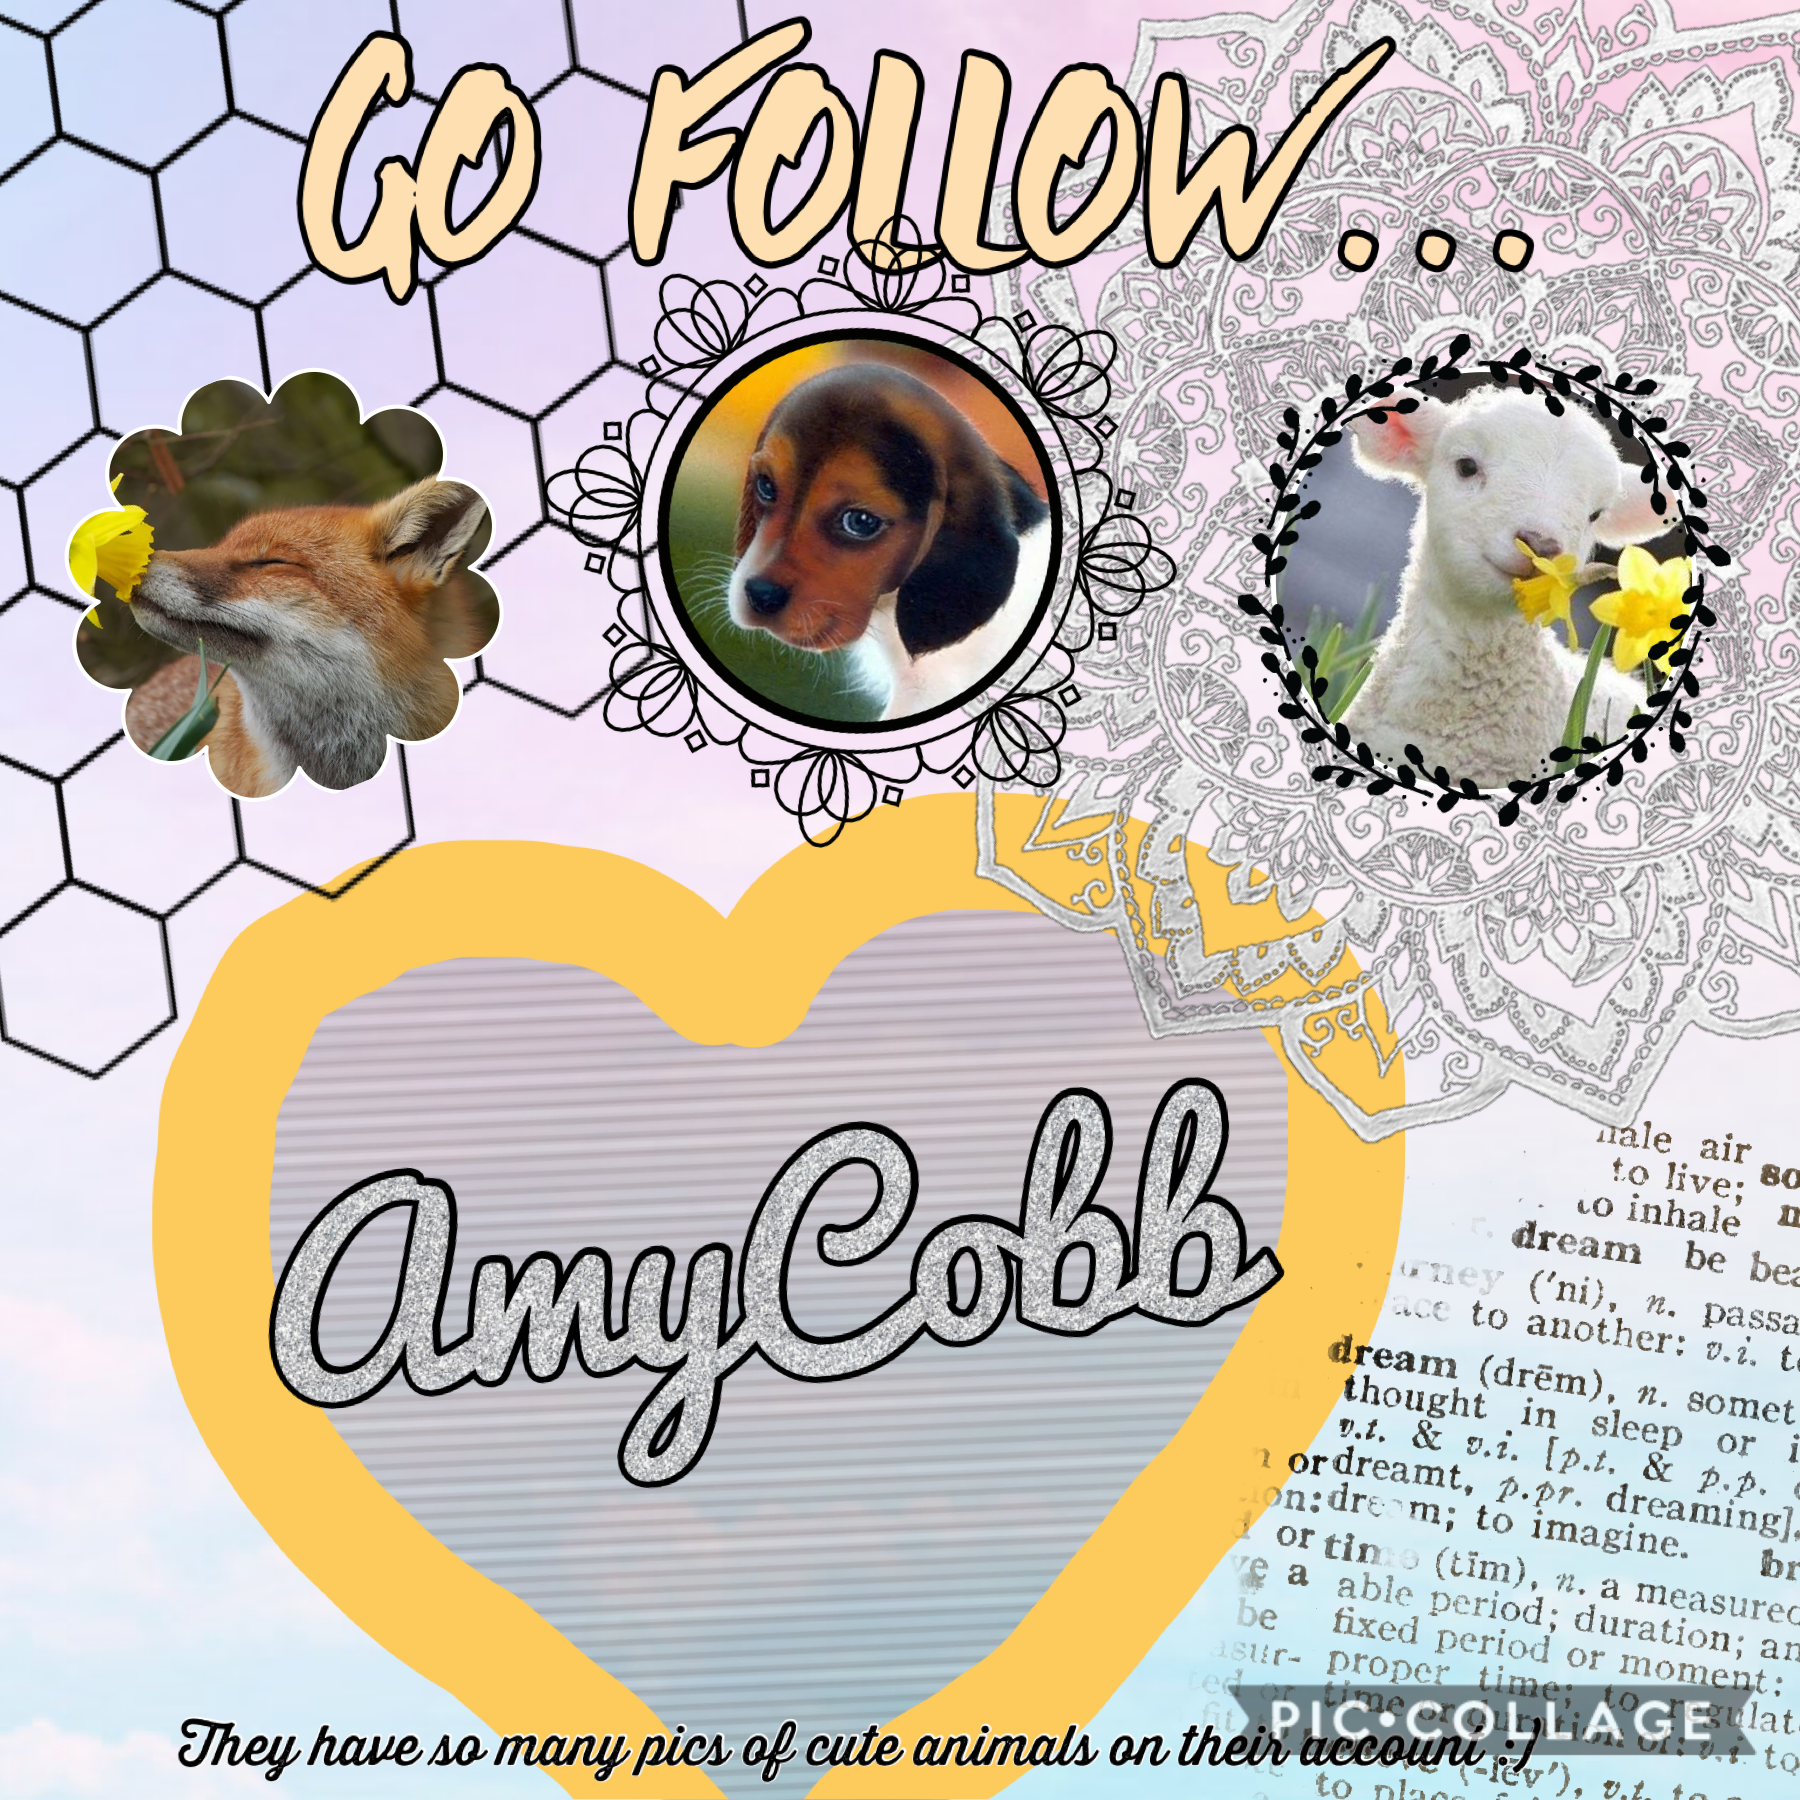 🌮tap🌮
Shoutout to AmyCobb! Follow them! 